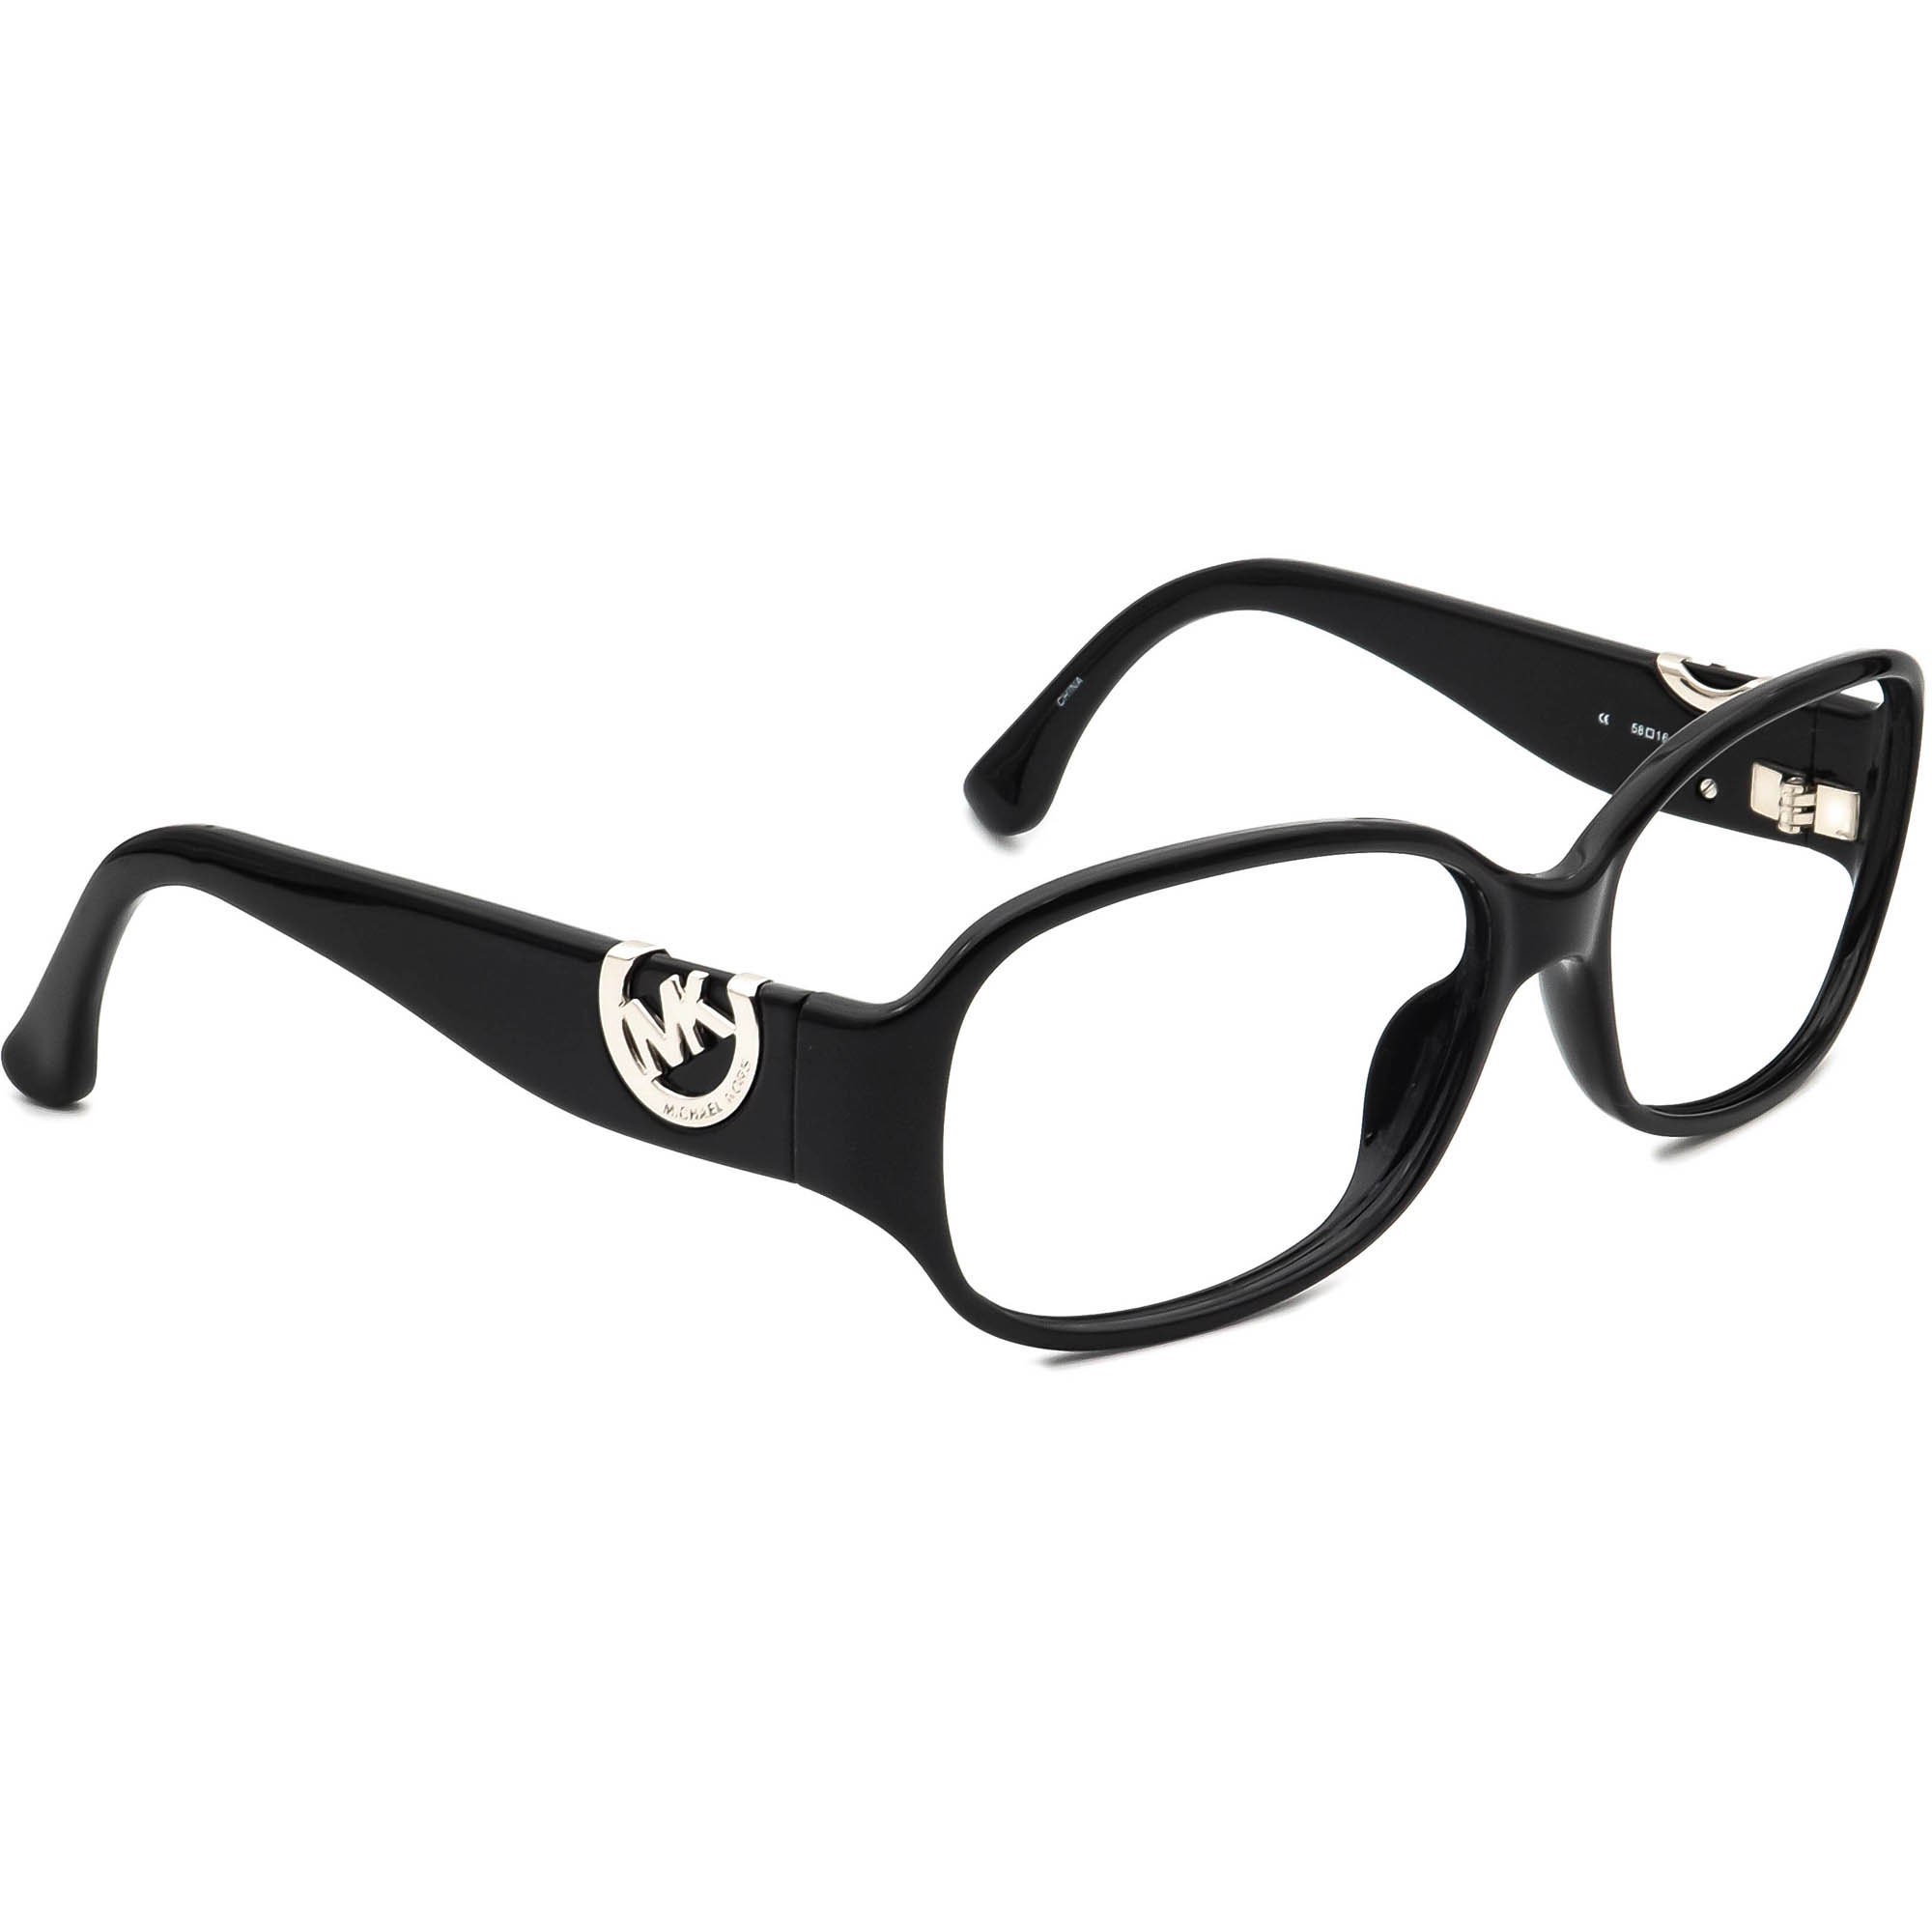 Michael Kors Sunglasses Frame Only Sag Harbor M2755S 001 - Etsy Denmark